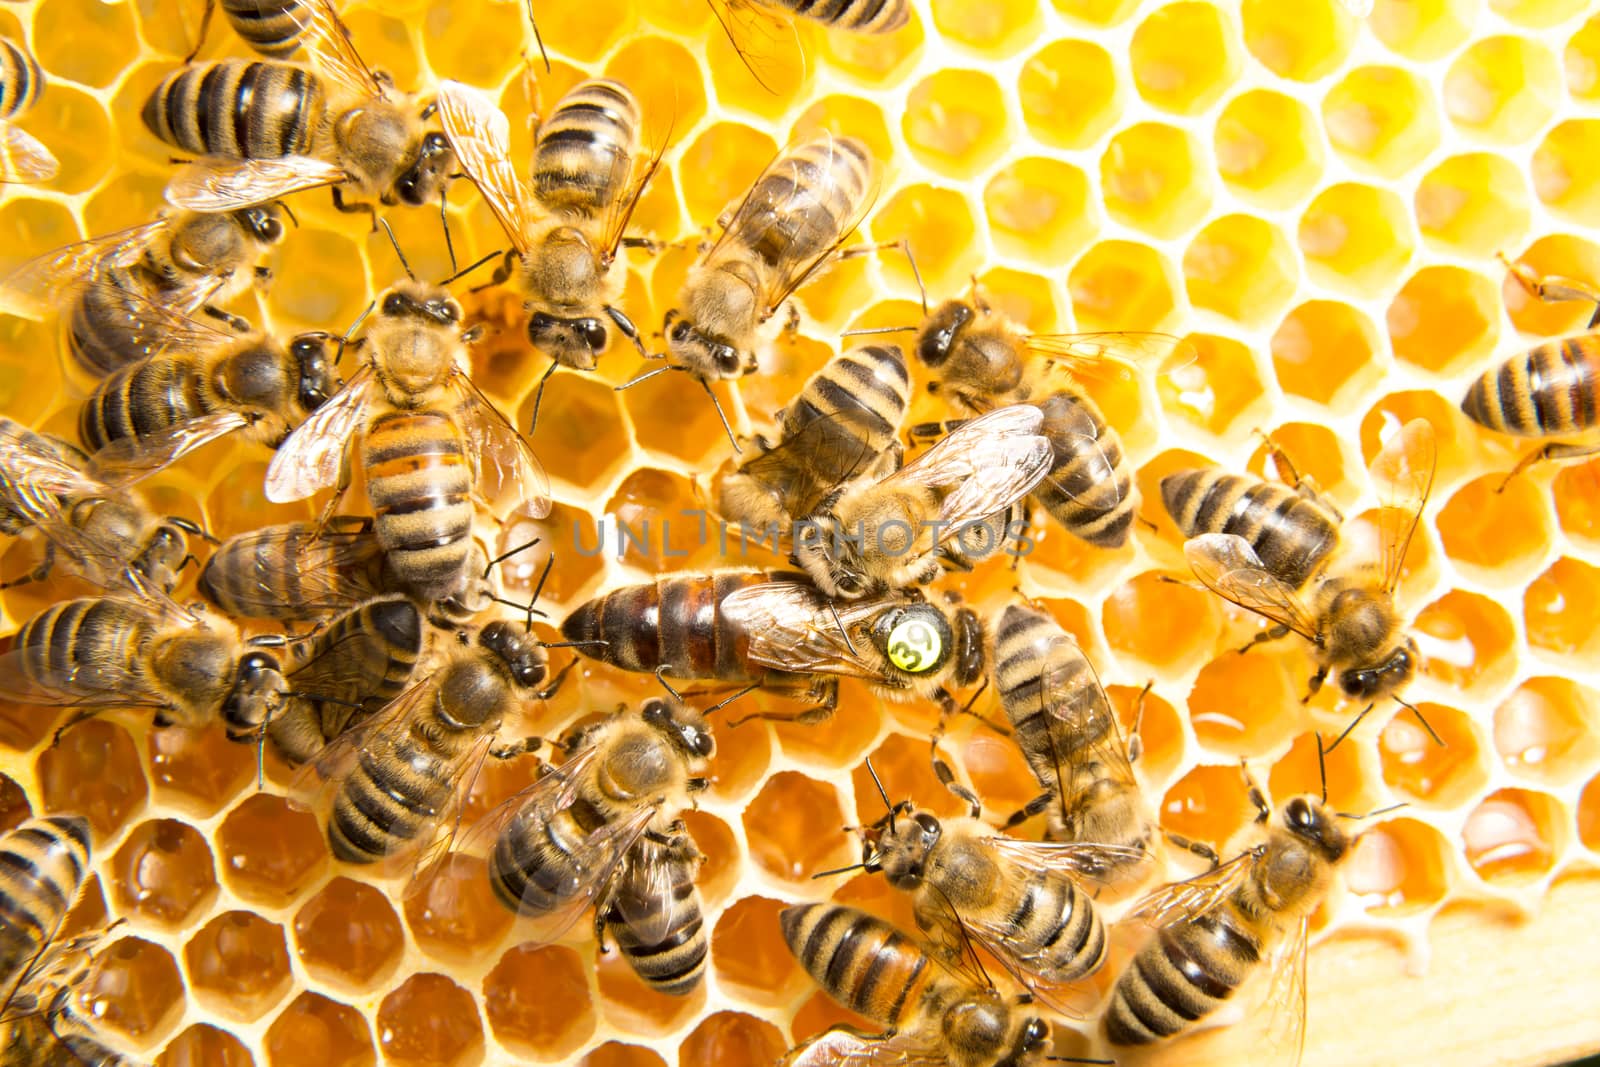 Queen bee in bee hive laying eggs by ikonoklast_fotografie